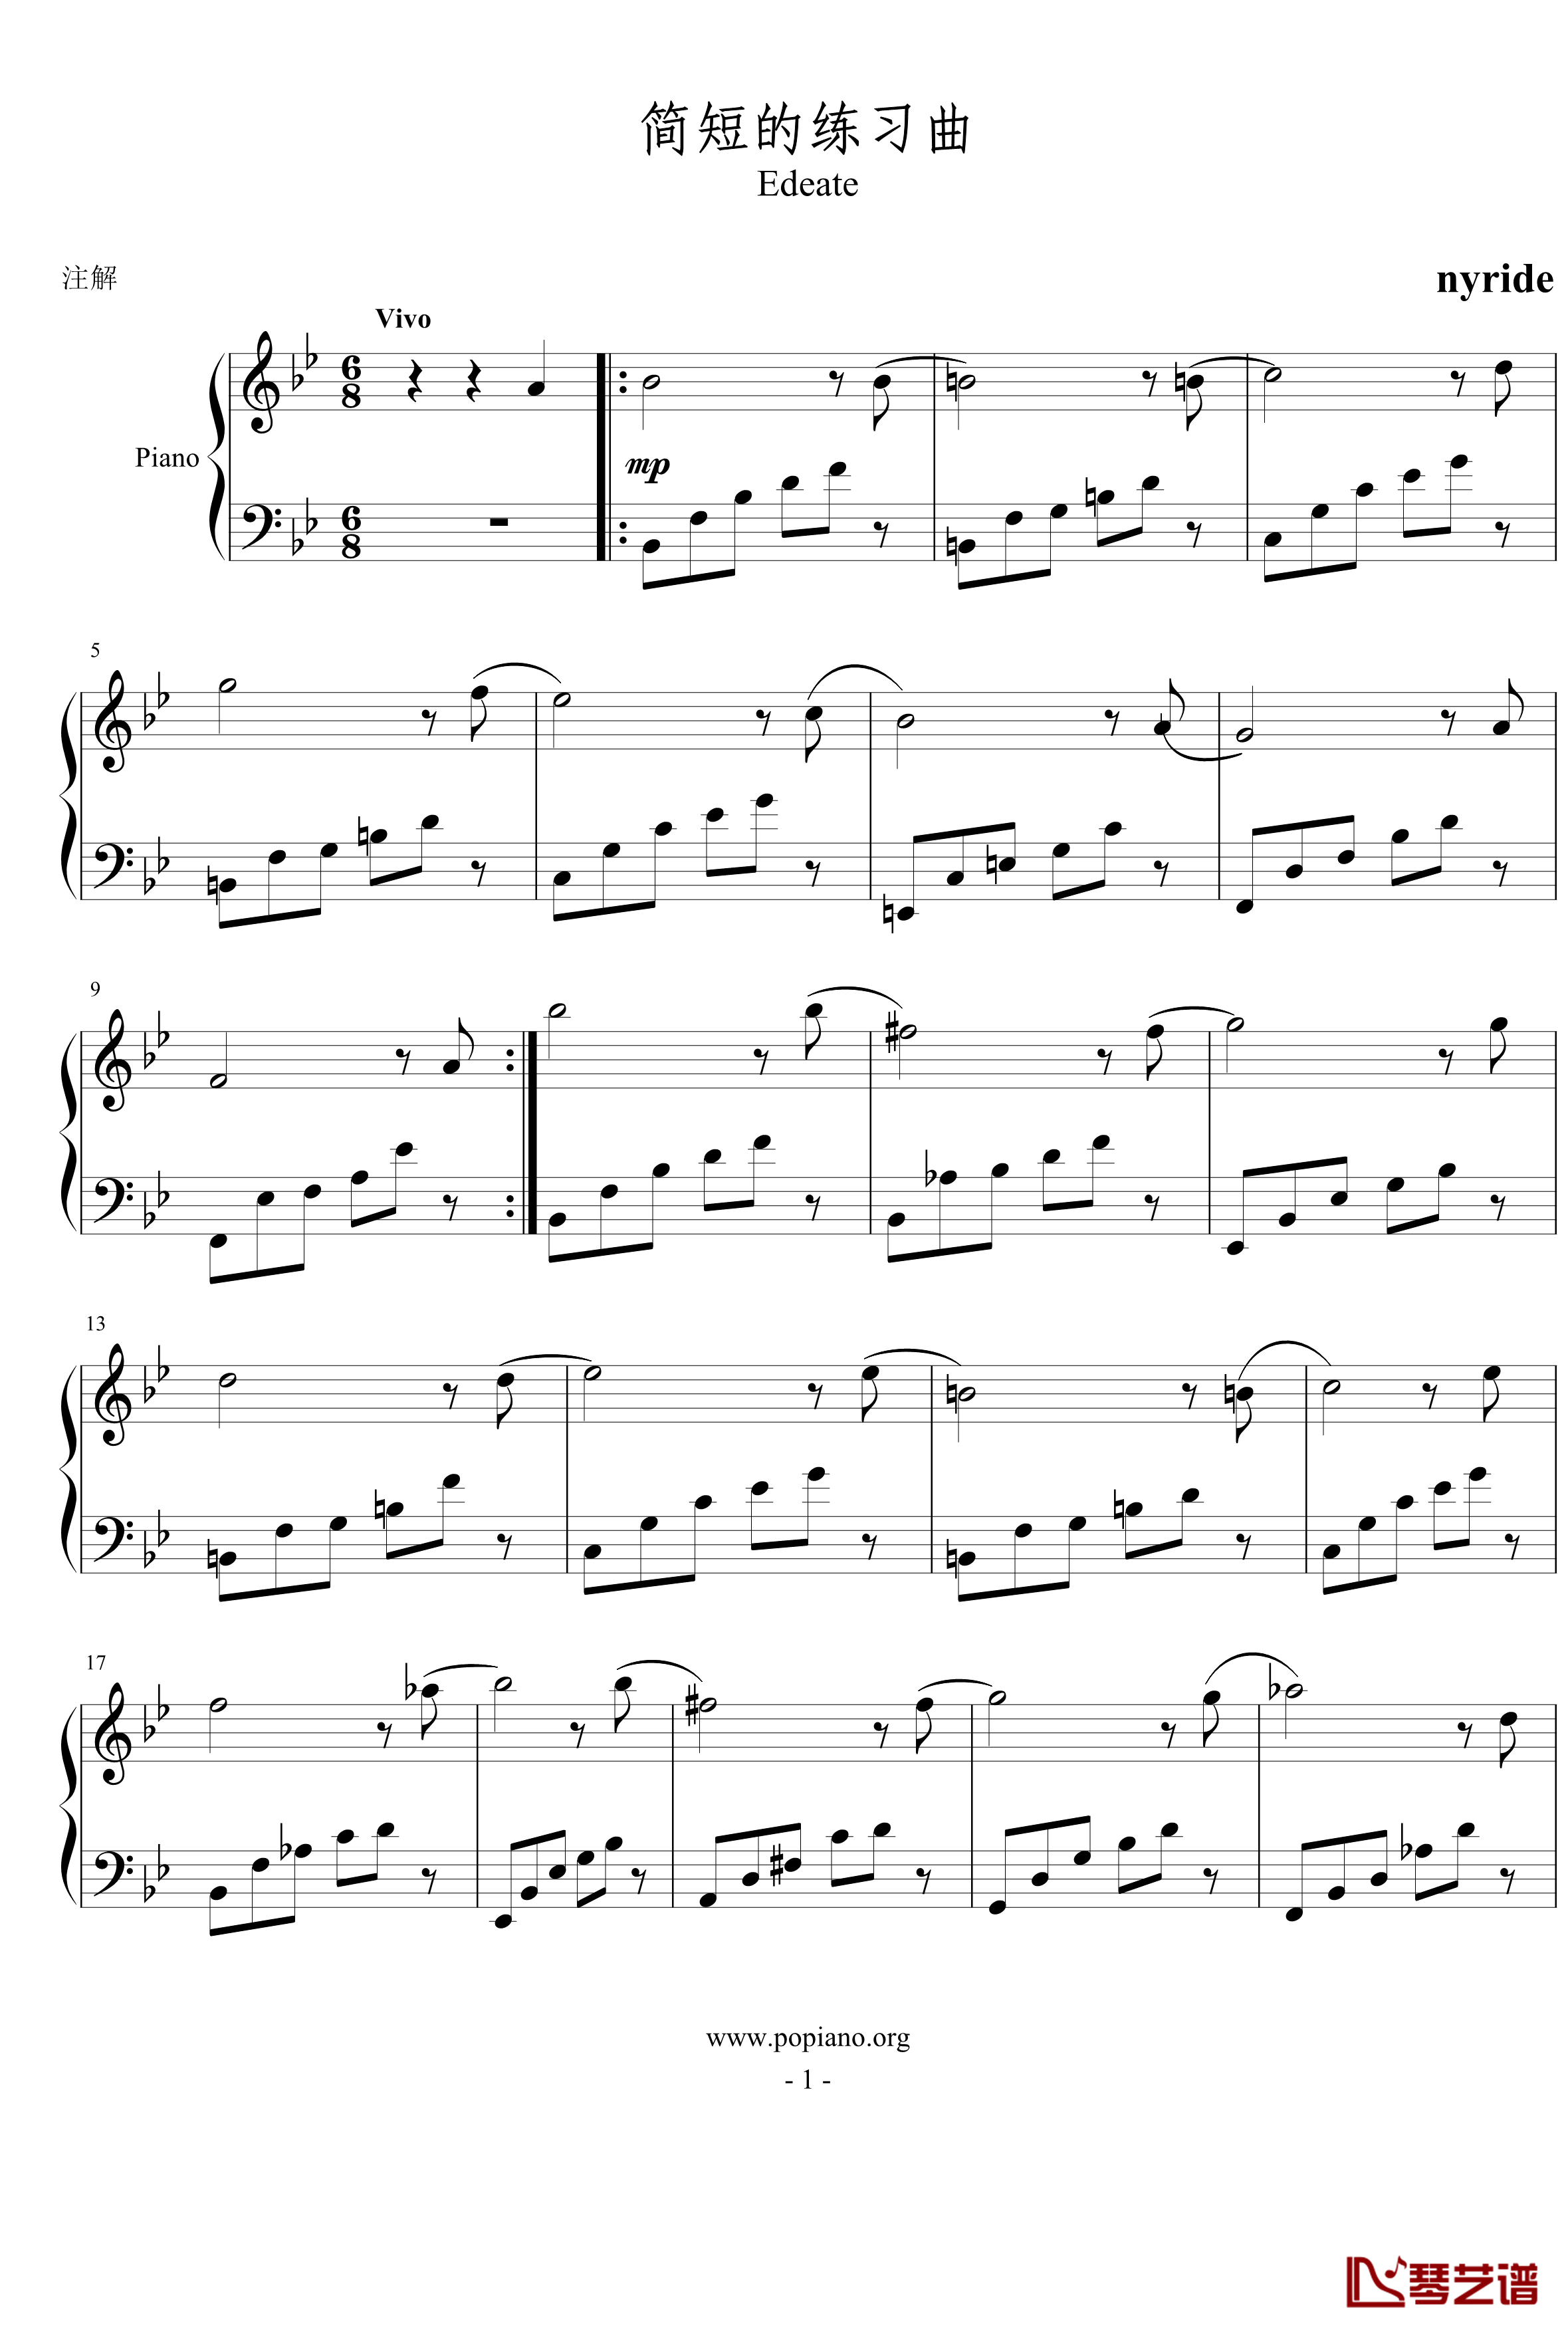 简短的练习曲钢琴谱-nyride1